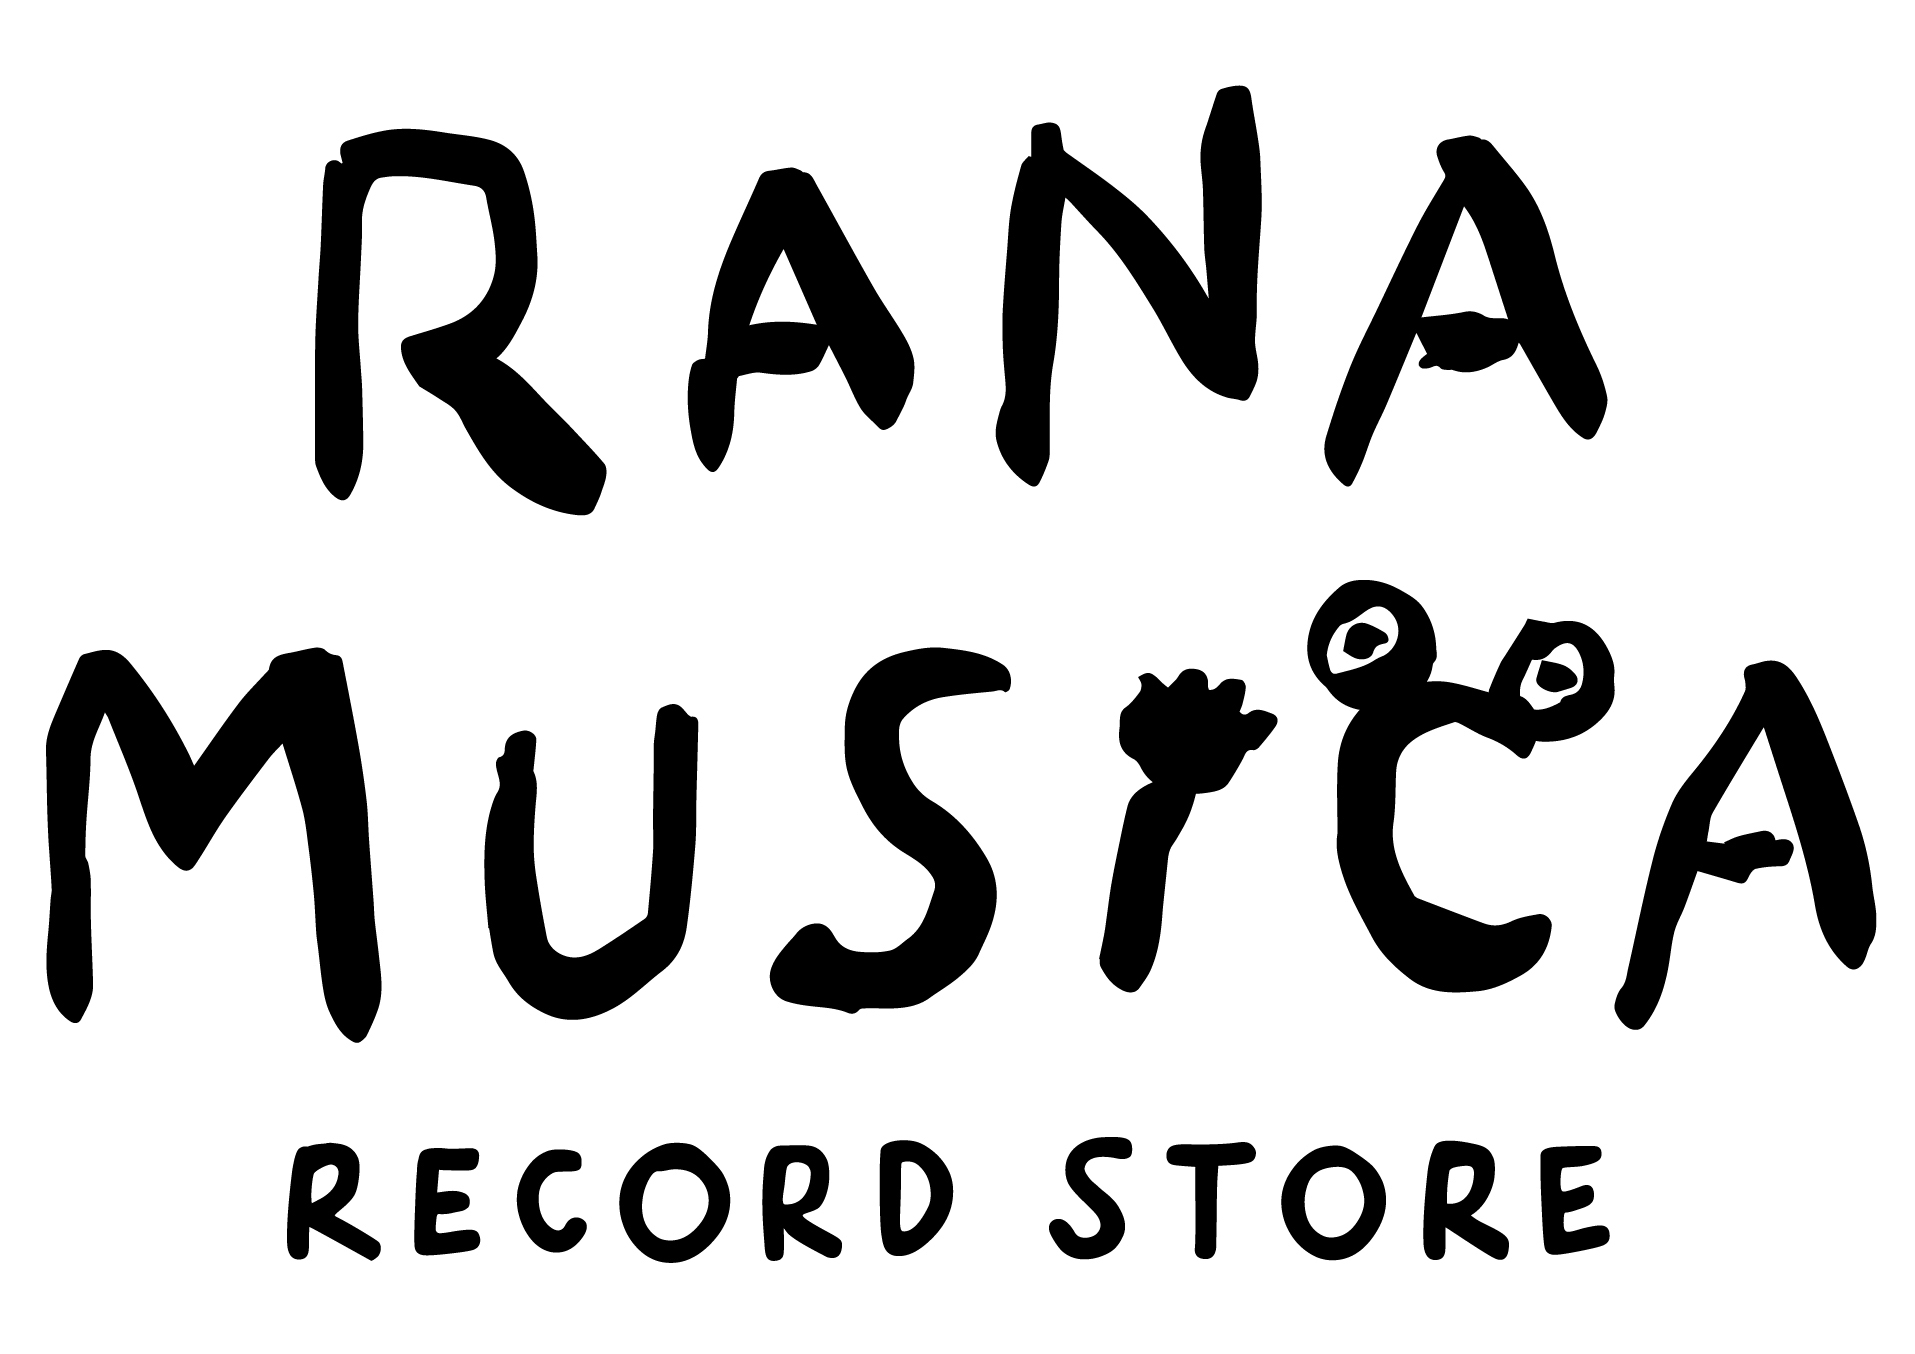 RANA-MUSICA RECORD STORE